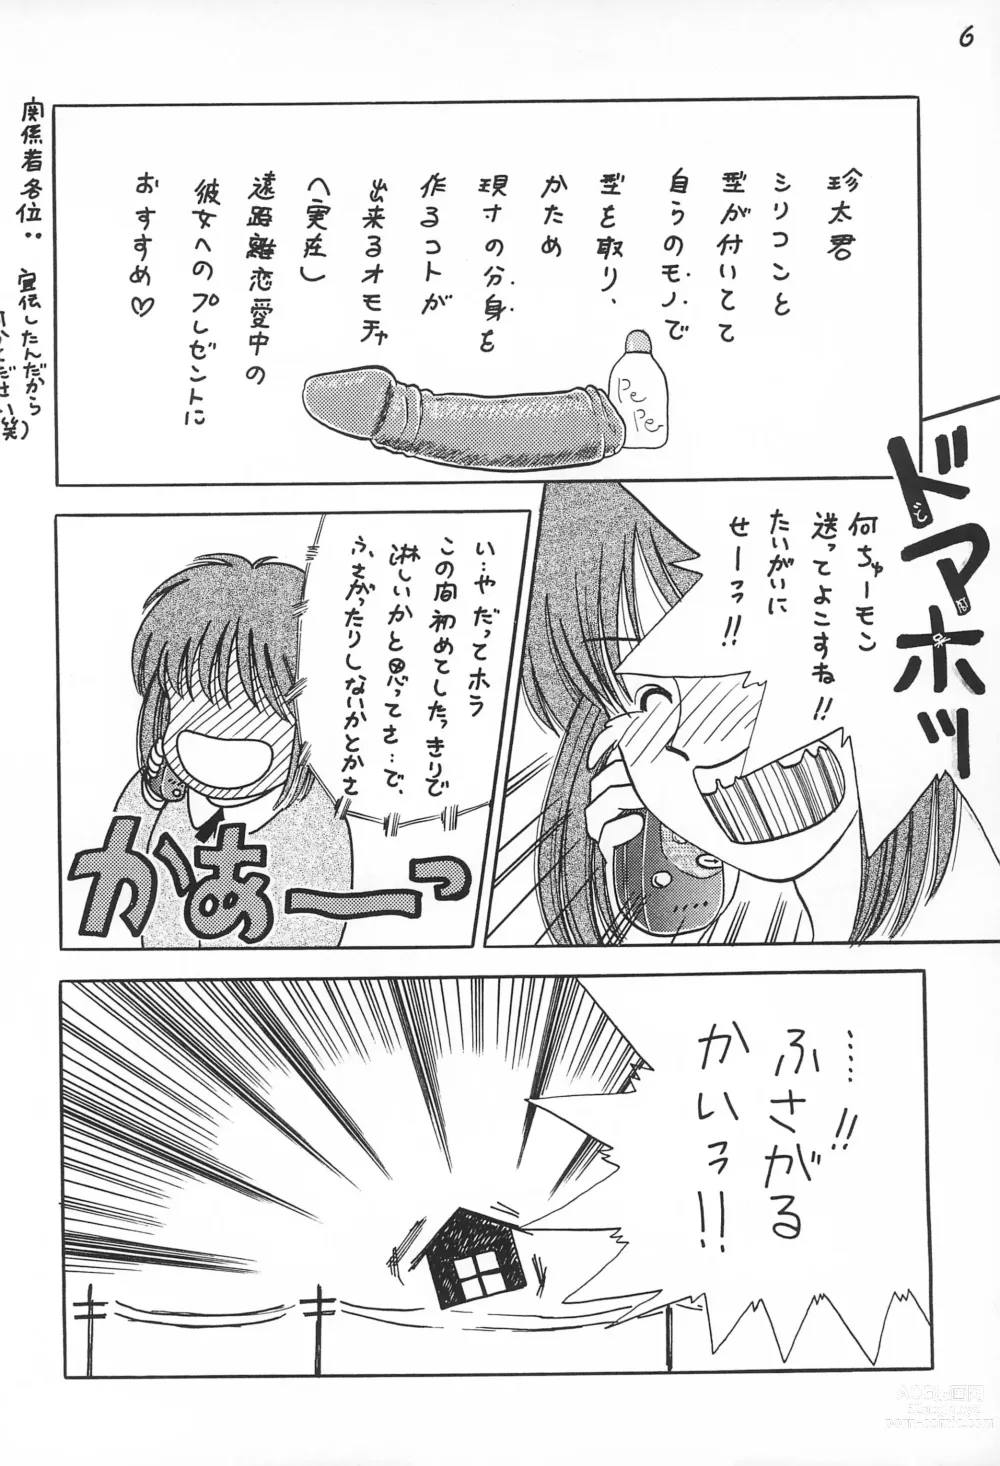 Page 8 of doujinshi Gokuraku Tokkyuu CAMERON